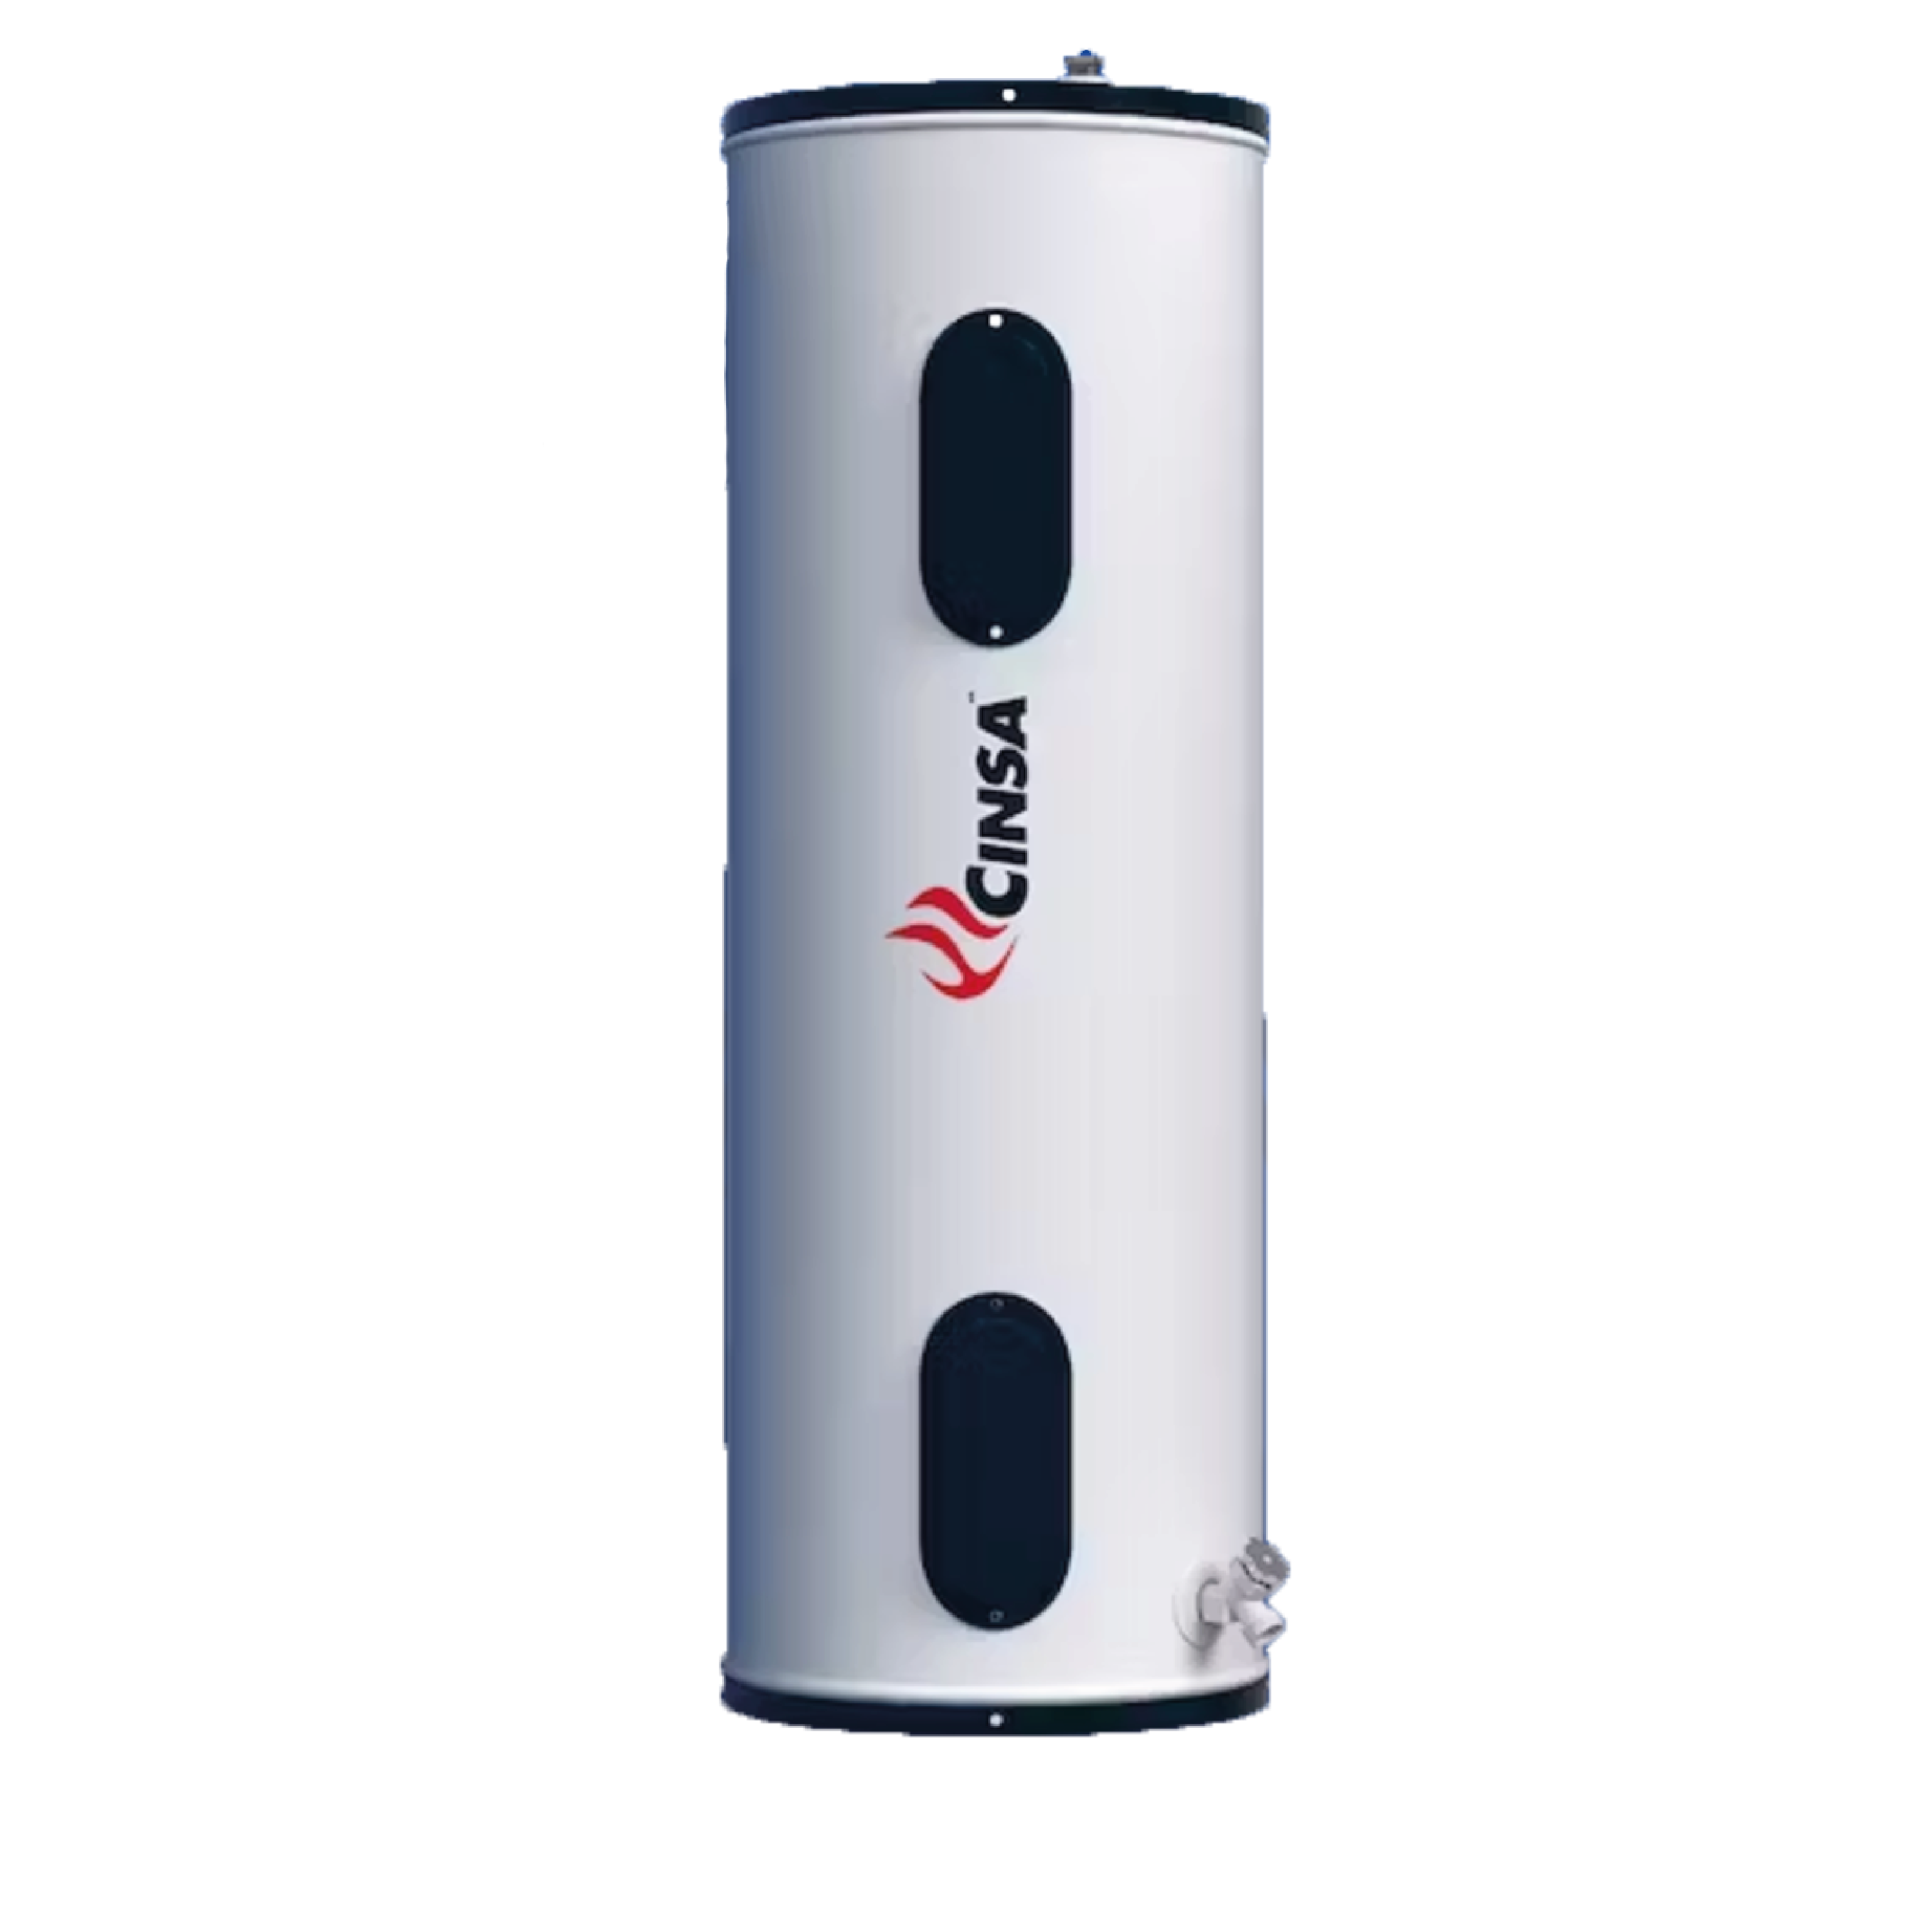 Calentador de Agua 50 Litros Eléctrico 220V Thermex  Almacenes Boyacá  .:variedad y calidad que impresionan:.